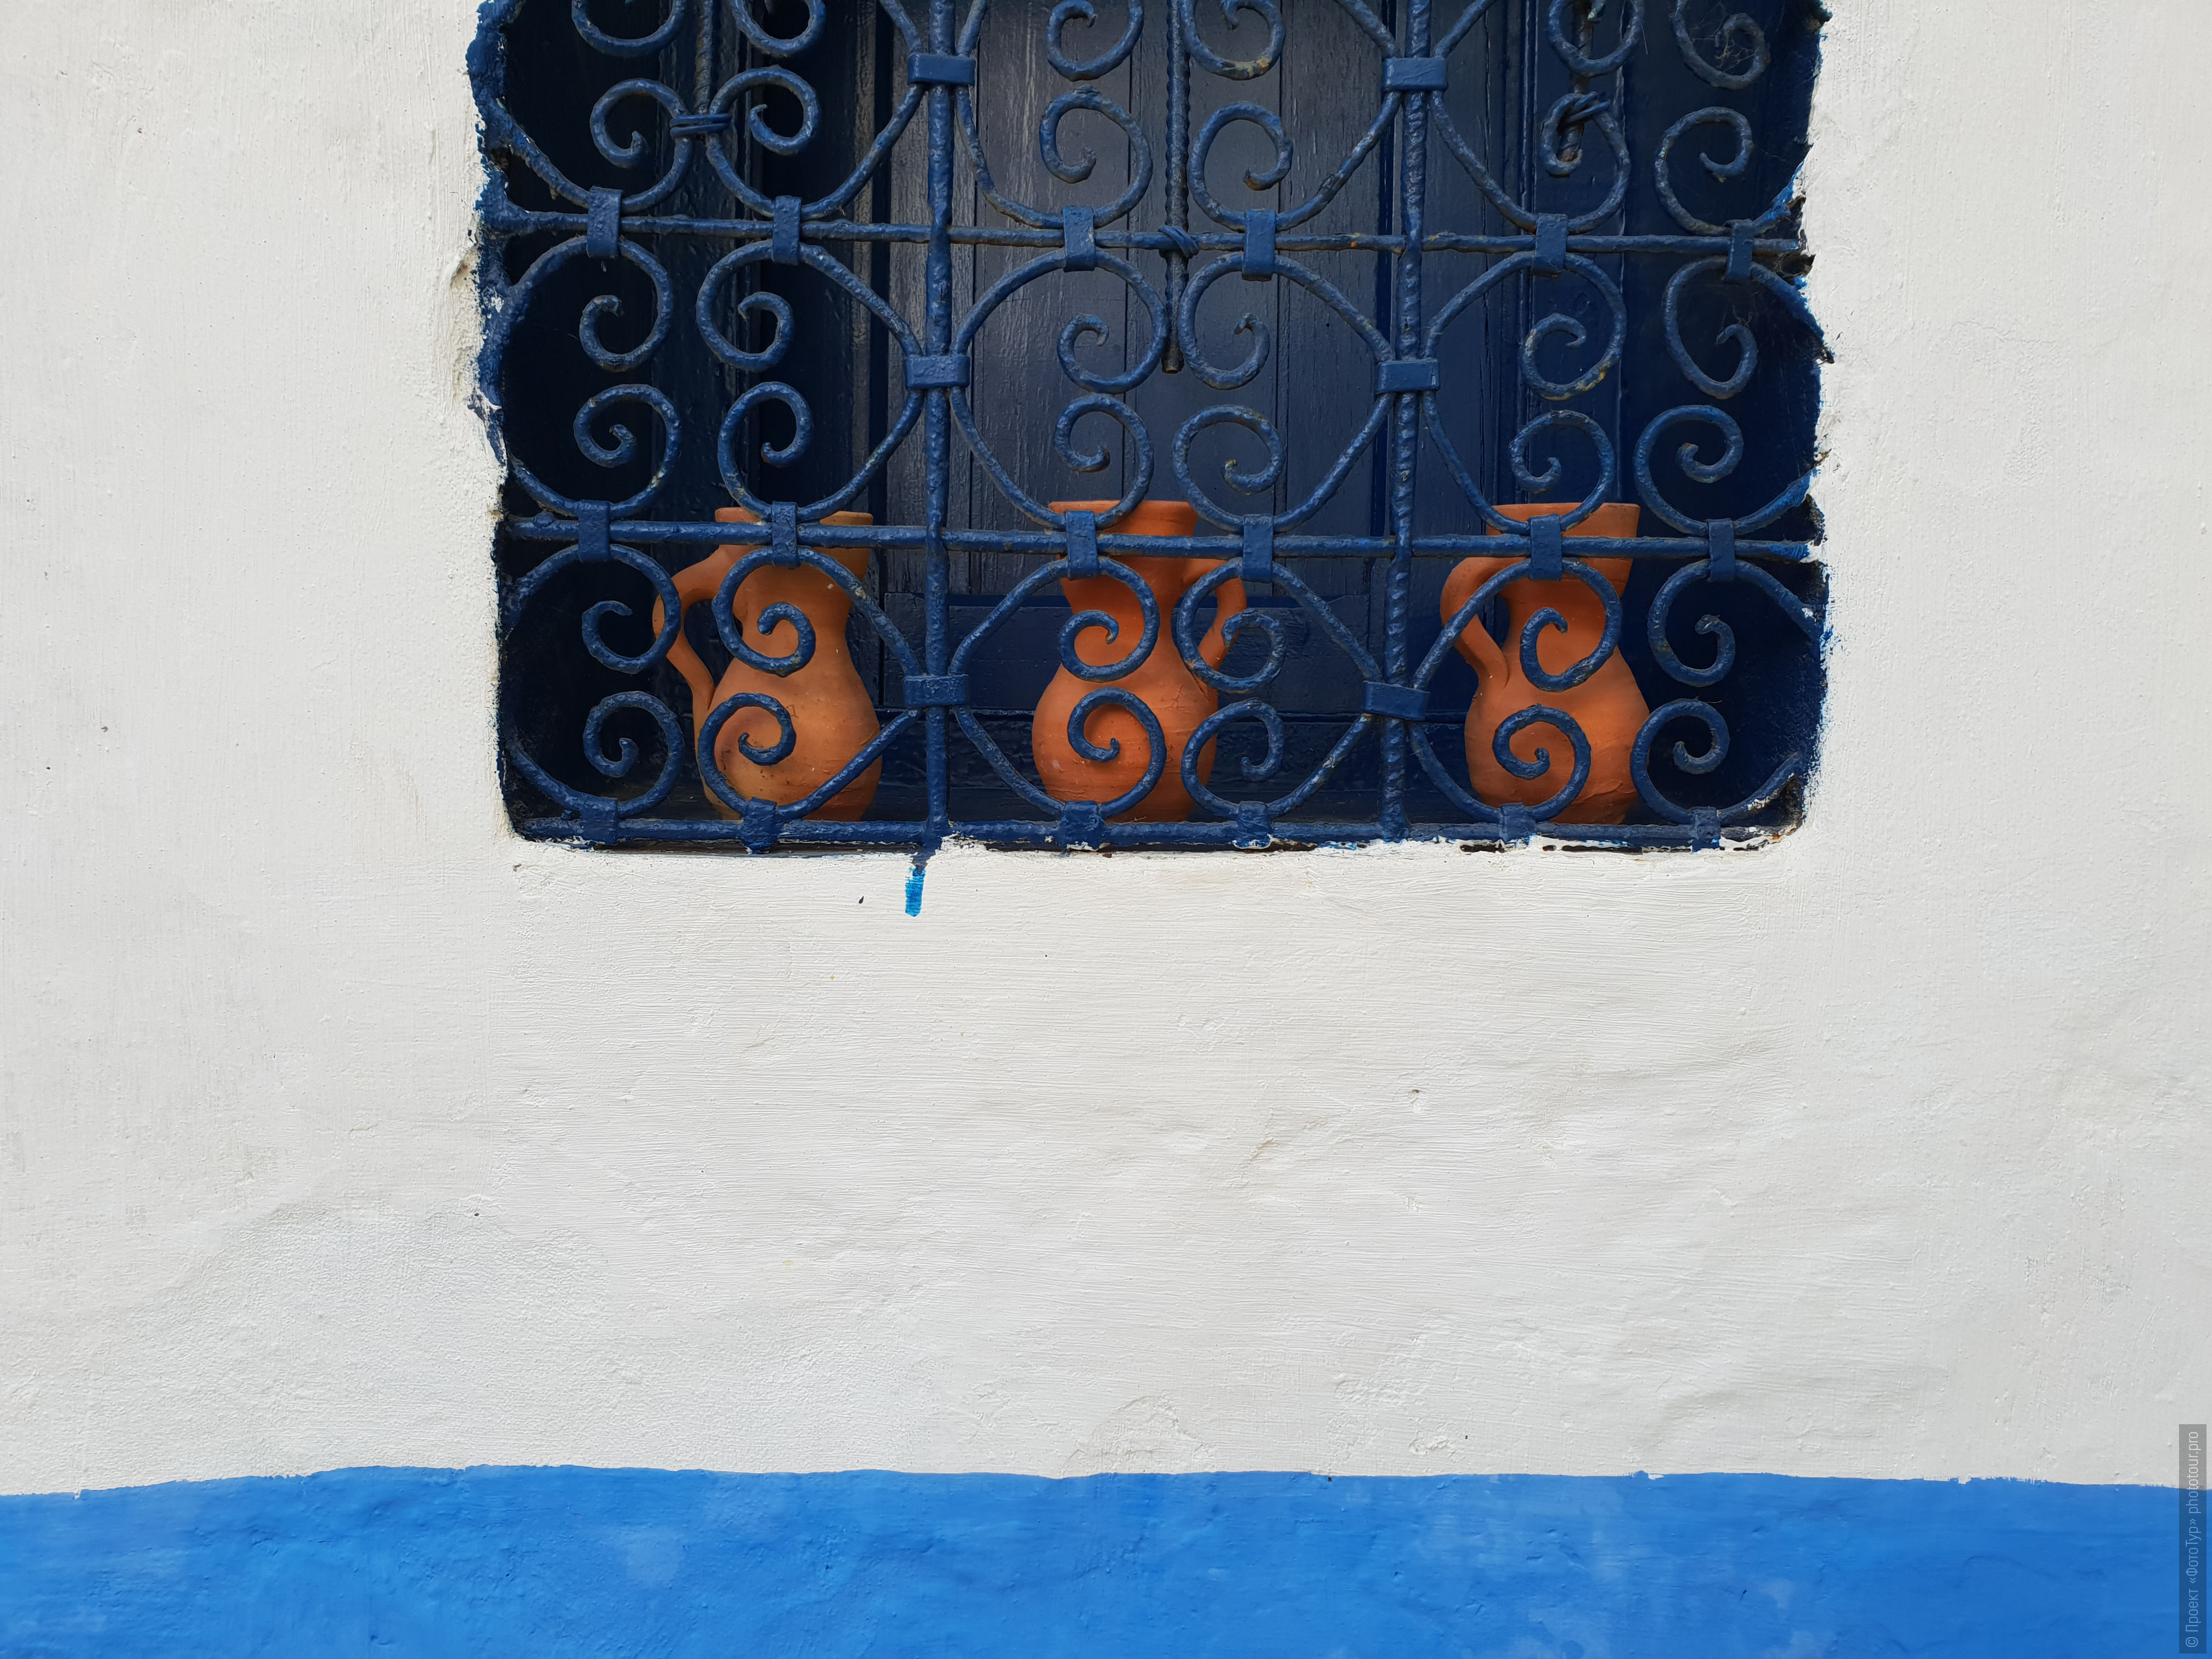 Кувшины в белой стене Асилы, фототур по Марокко, ноябрь 2018 года.